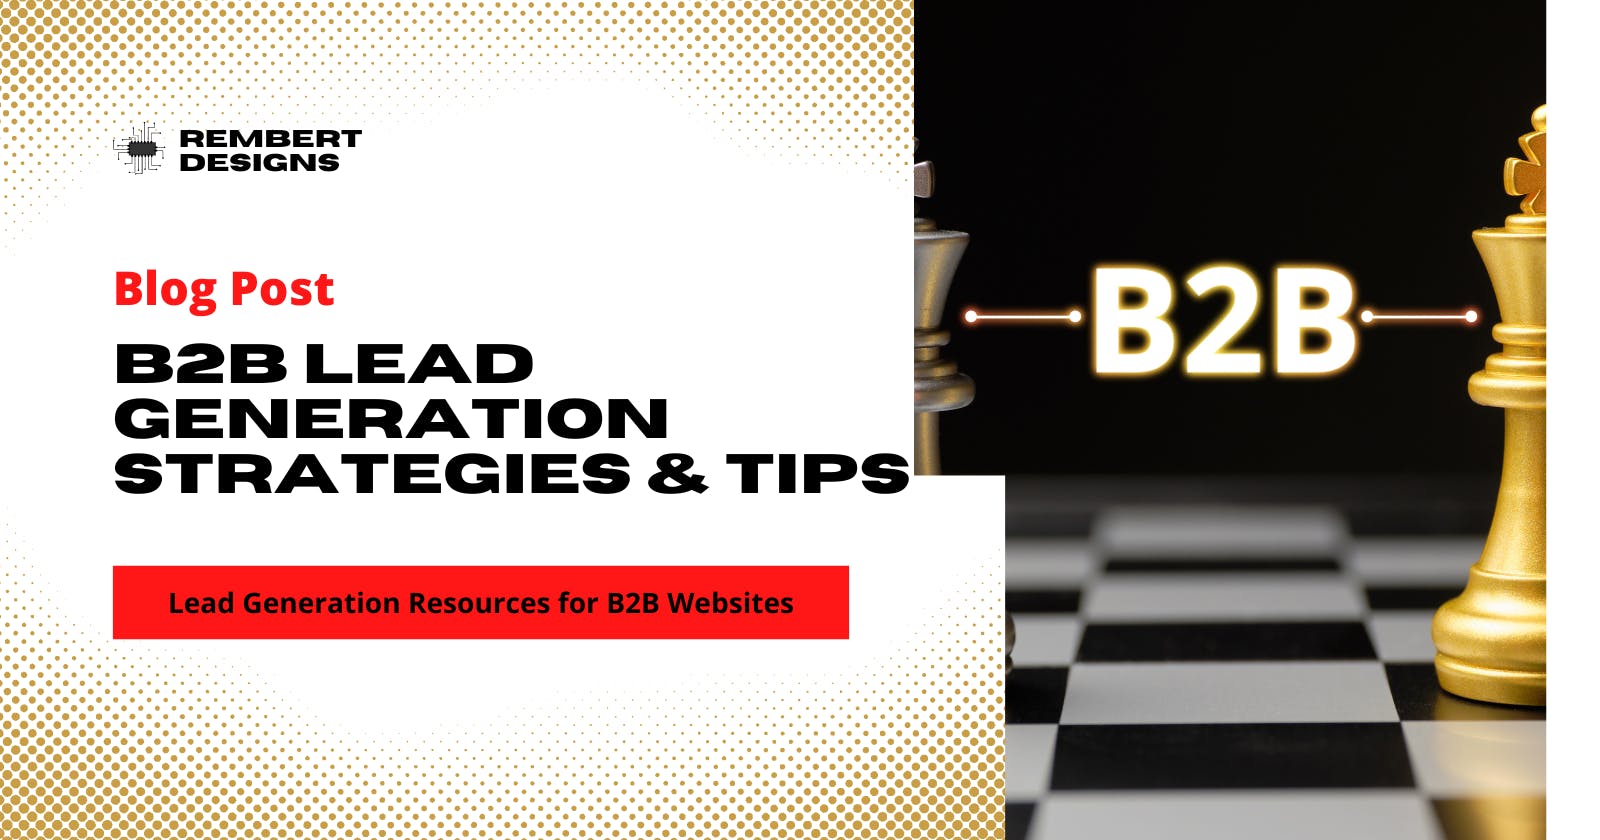 B2B Lead Generation Strategies & Tips